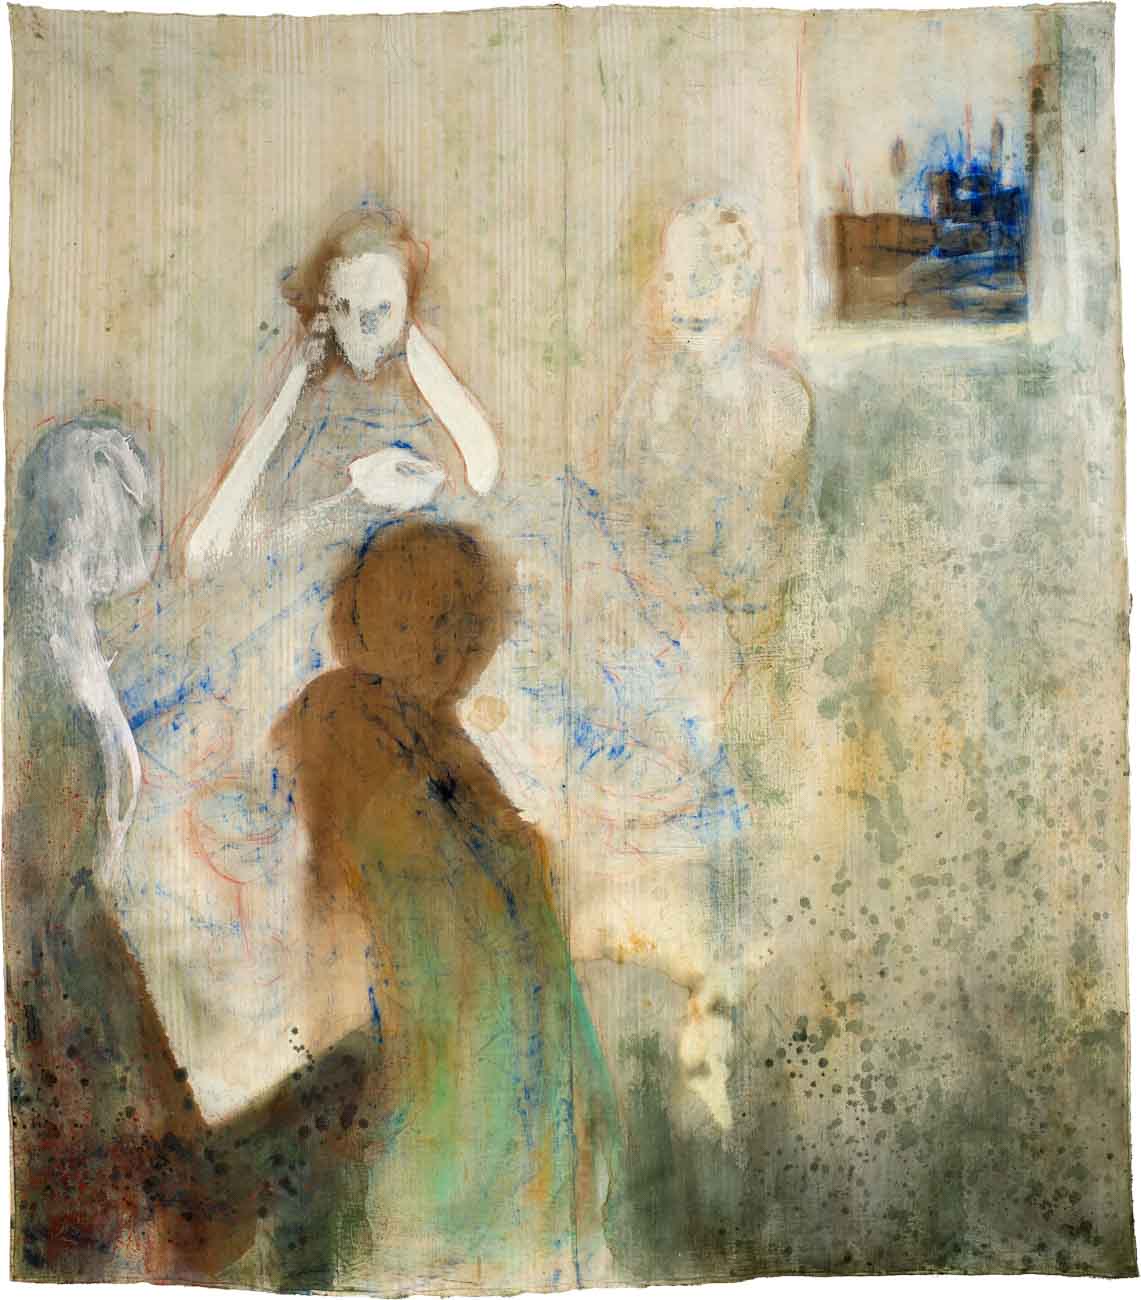 Chiara Lera - Memory of a free festival, 212 x 190 cm, tecnica mista su tela di materasso, 2011